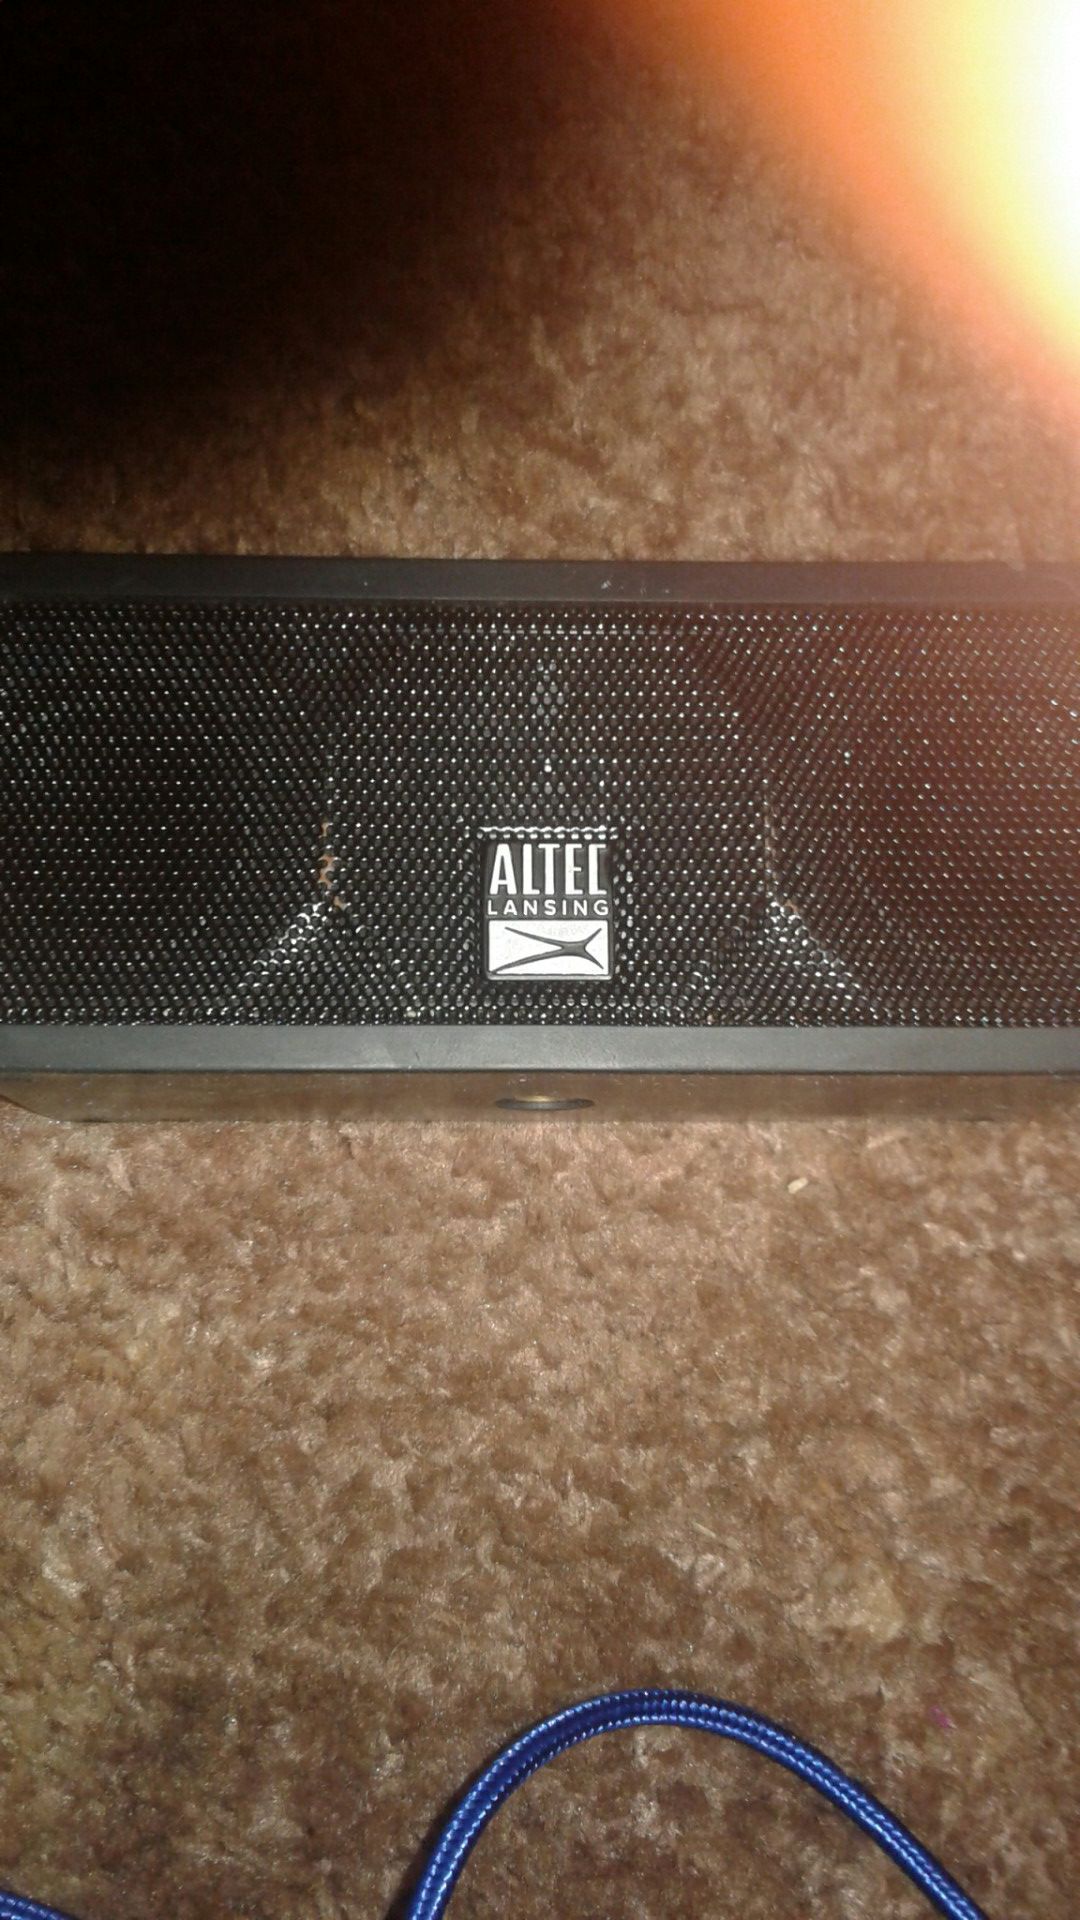 Altec Lansing life jacket h20 3 Bluetooth speaker